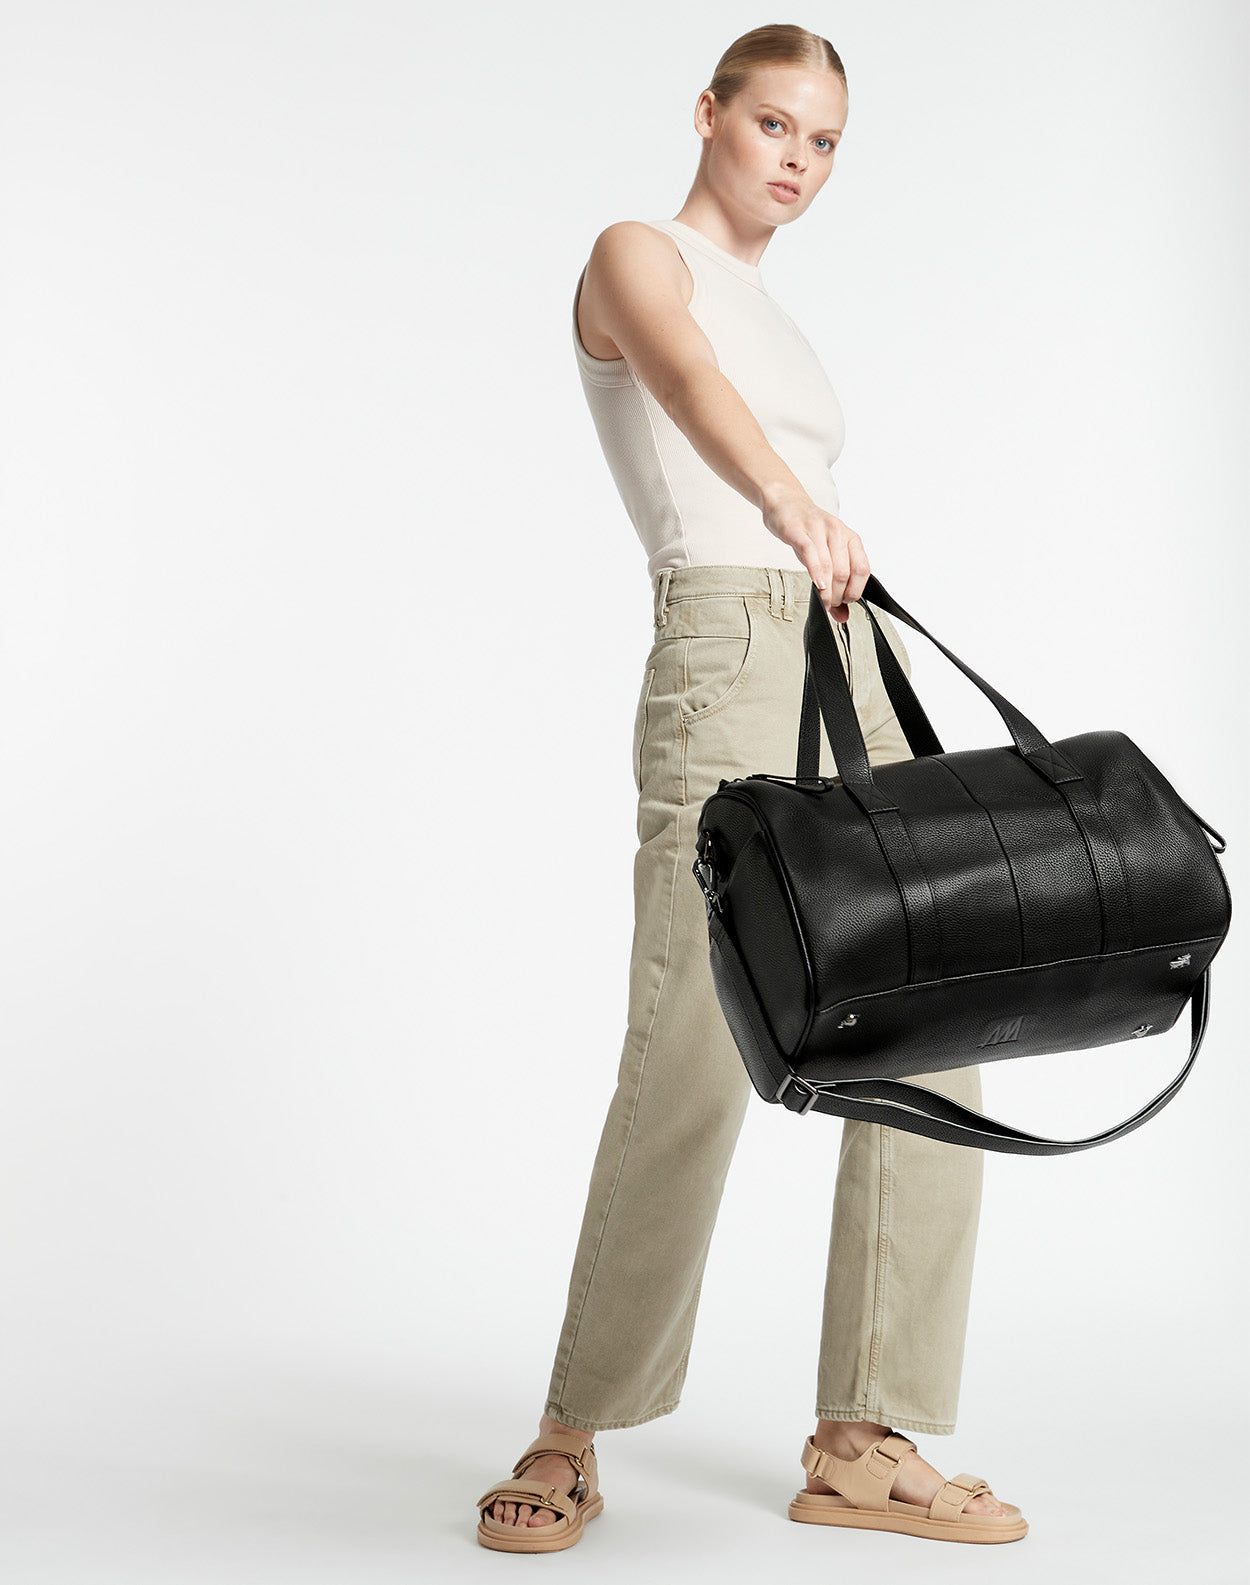 Leather Weekender Bag Women 